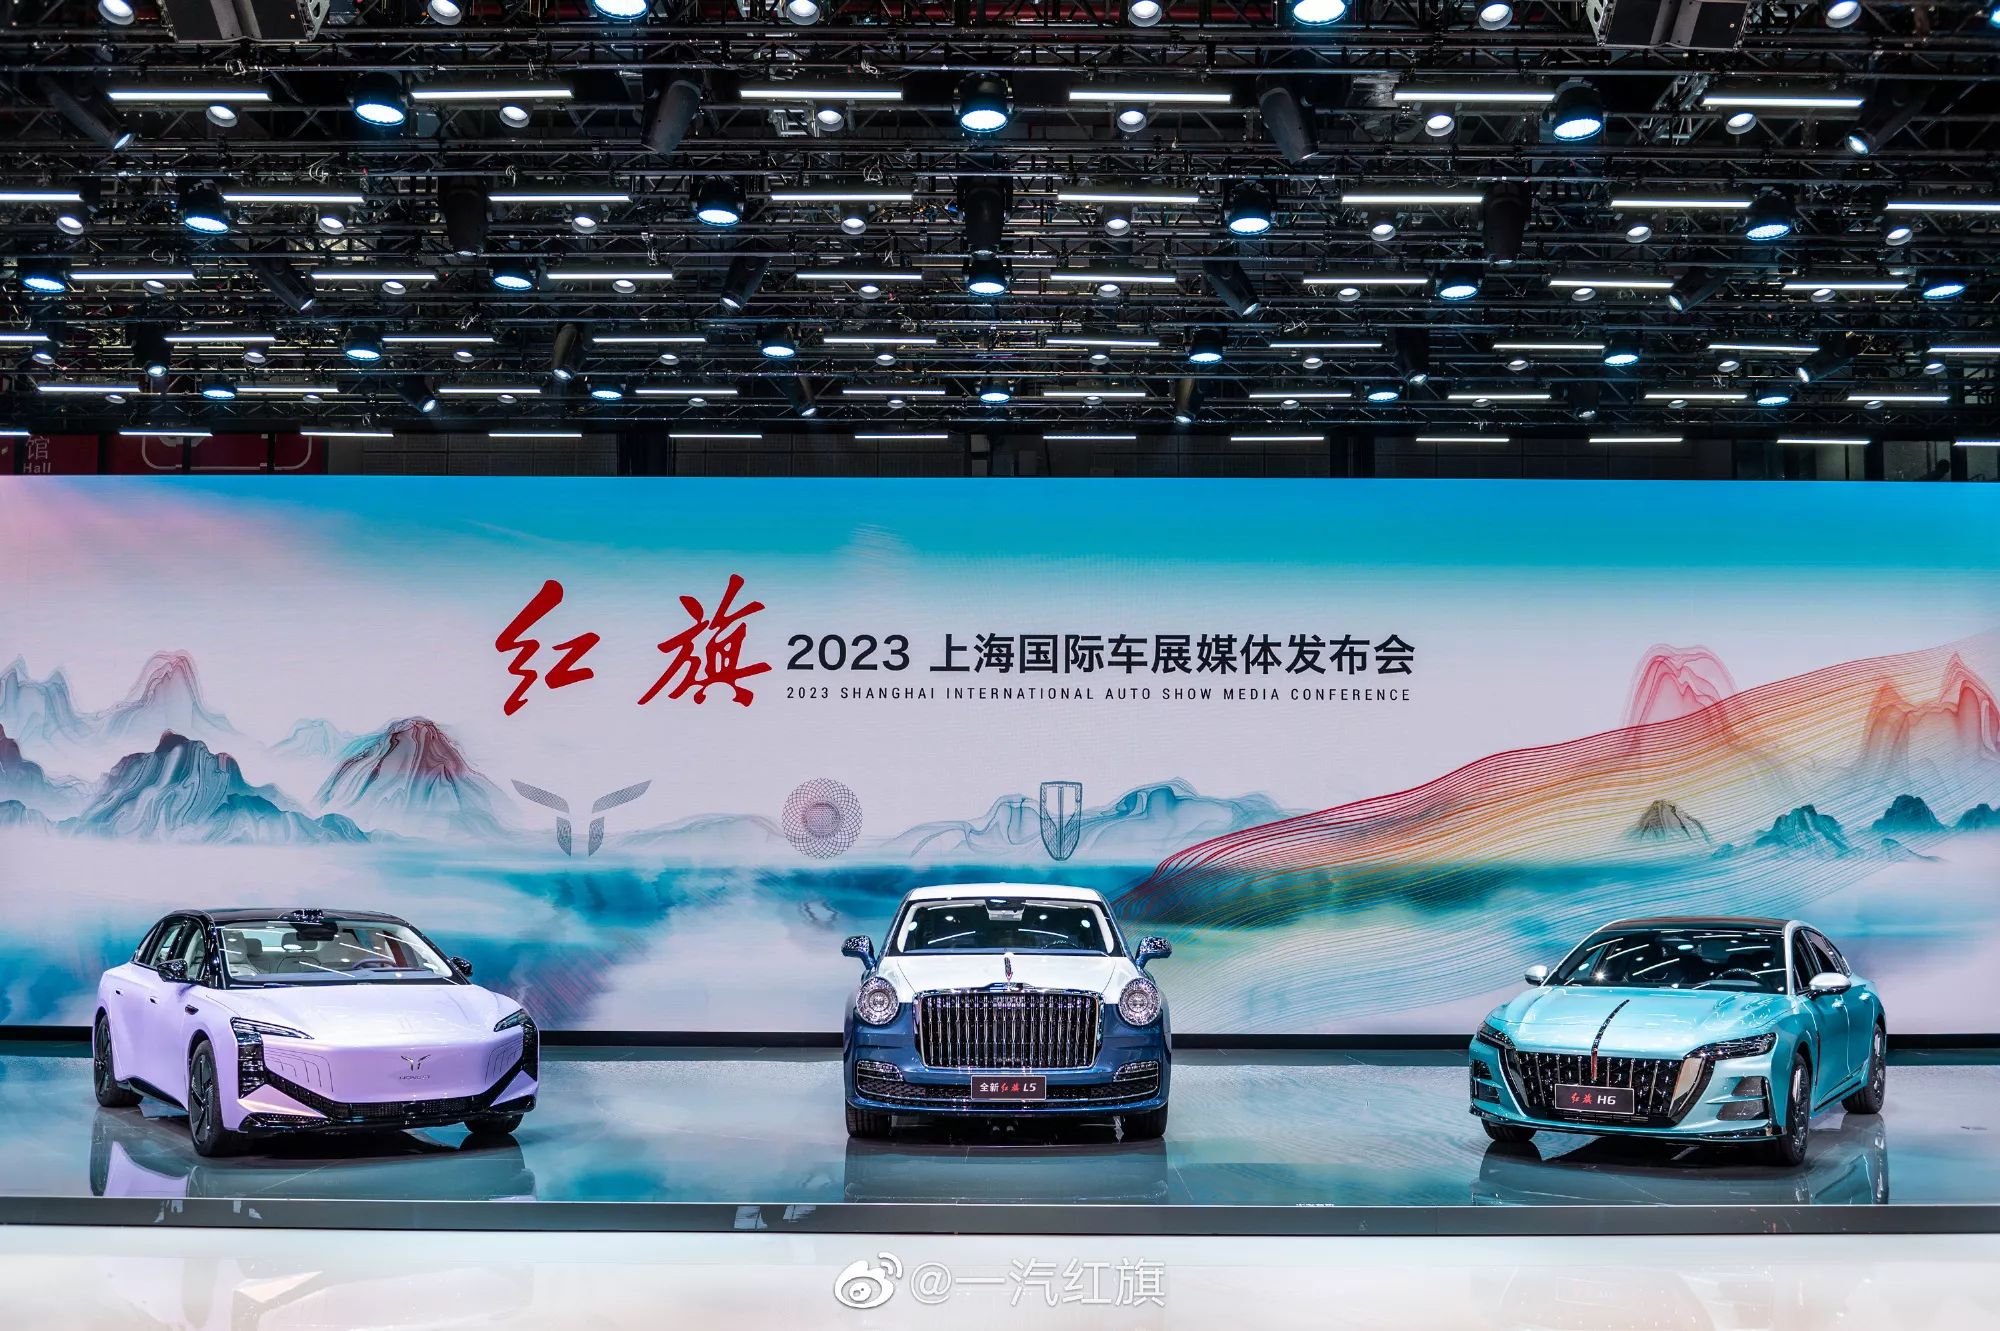 هونشي L5 الجديدة كلياً هي السيارة الصينية الأفخم والأغلى سعراً في التاريخ 7